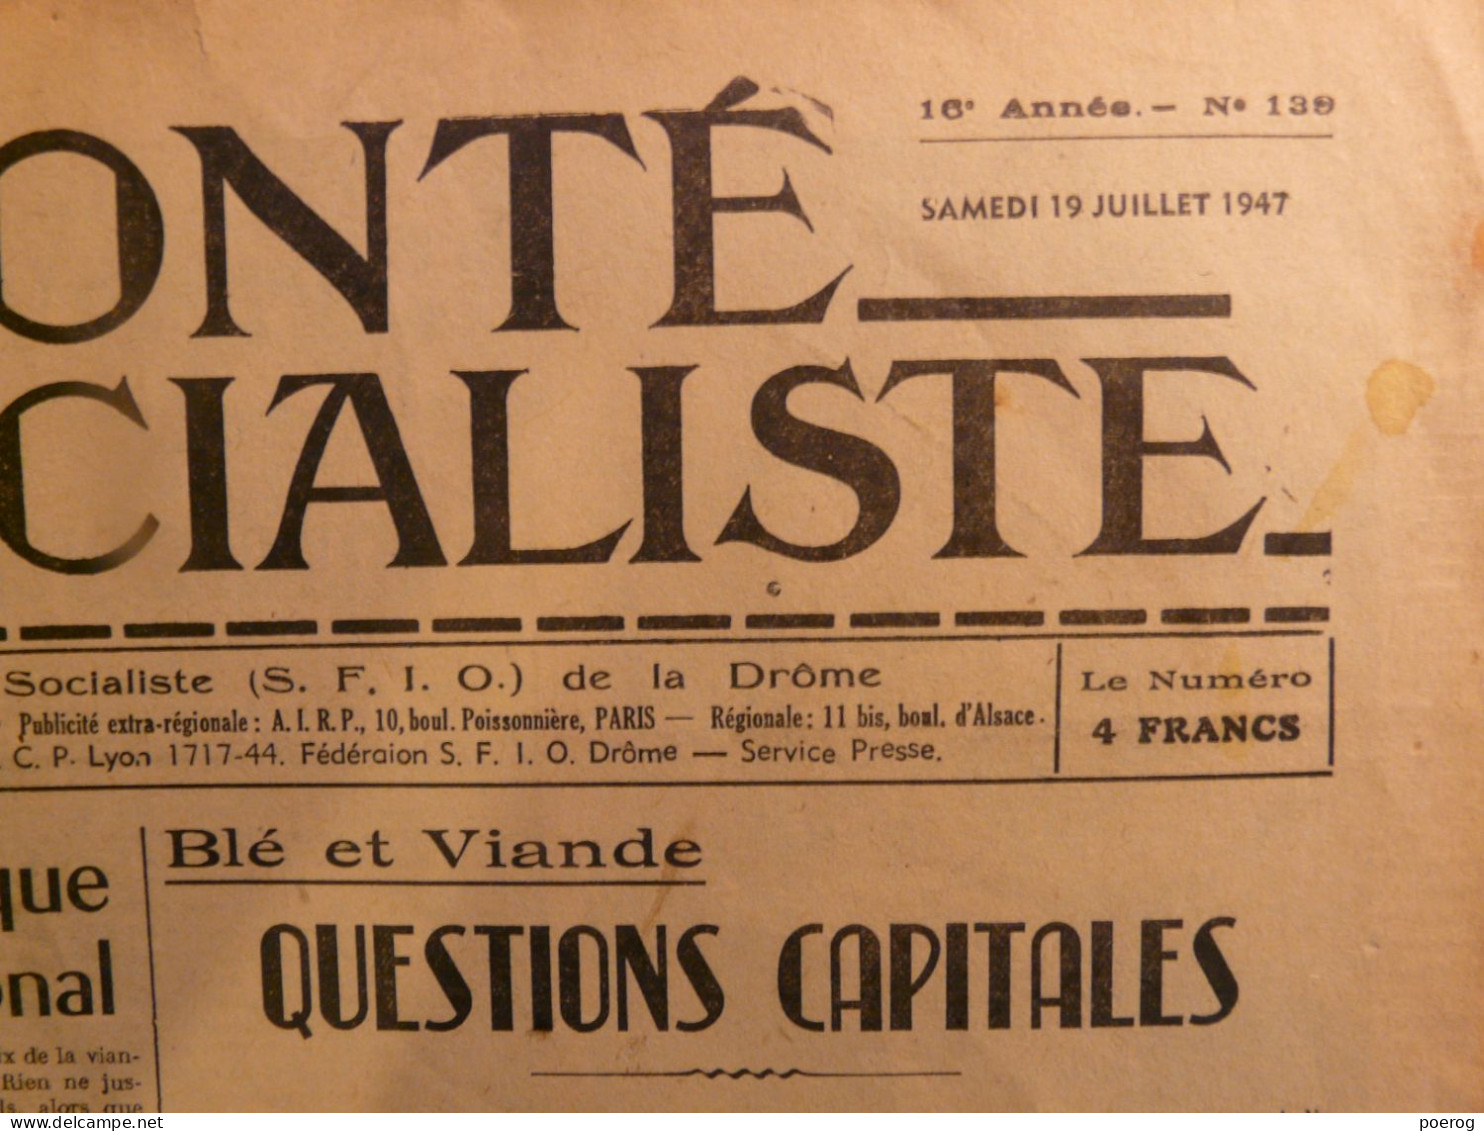 LA VOLONTE SOCIALISTE Du 19 JUILLET 1947 - BLE ET VIANDE QUESTIONS CAPITALES - SFIO DE LA DROME - SYNDICALISME - Algemene Informatie